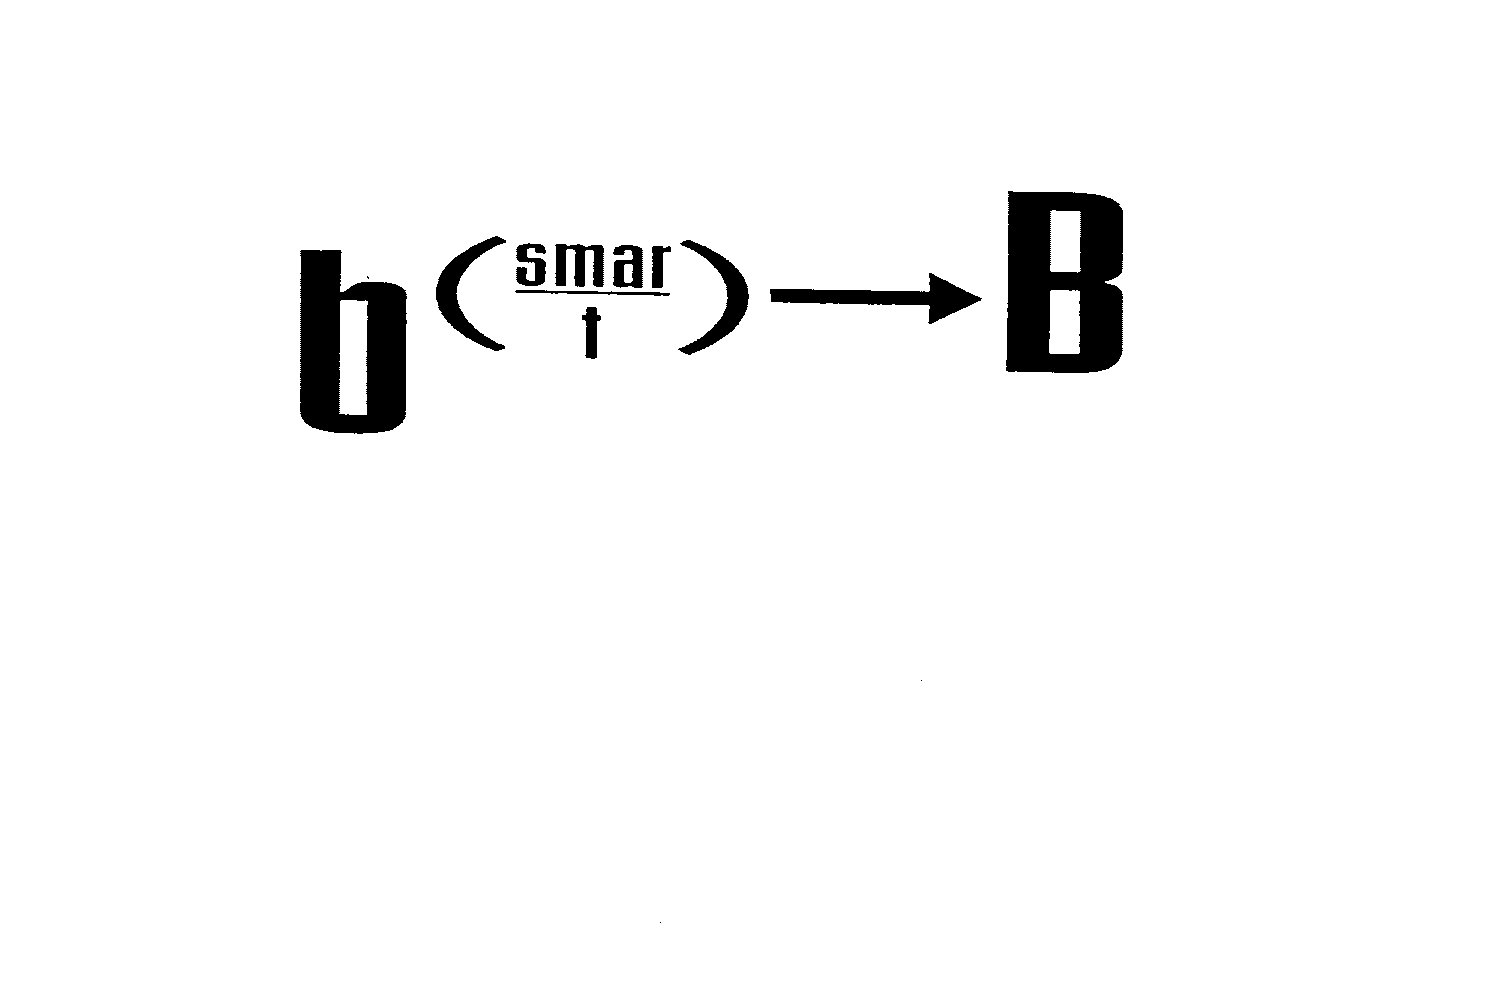  B (SMAR-T) B